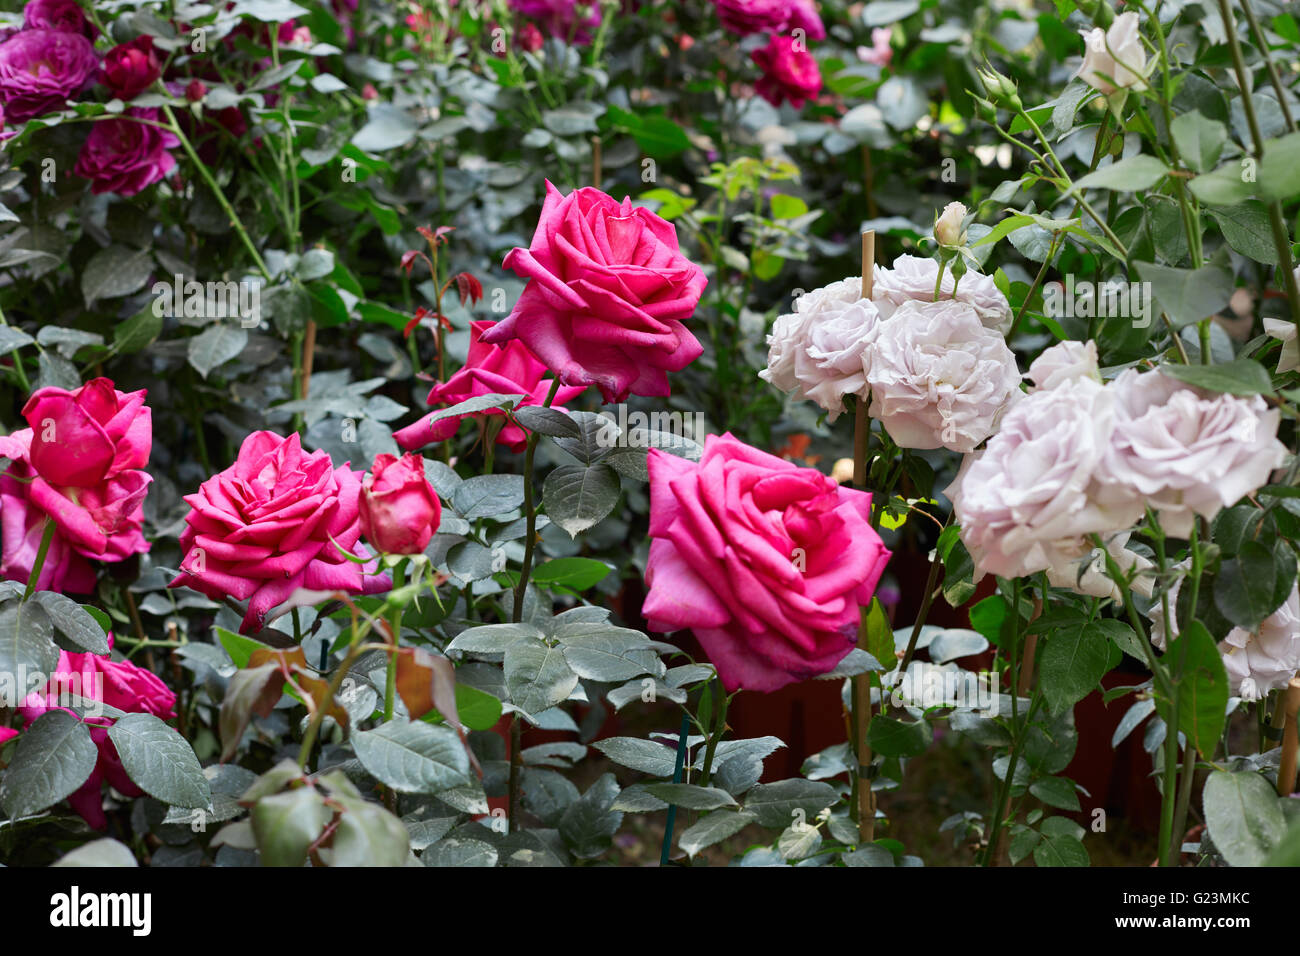 Jardin de roses rouges et roses blanches Banque D'Images